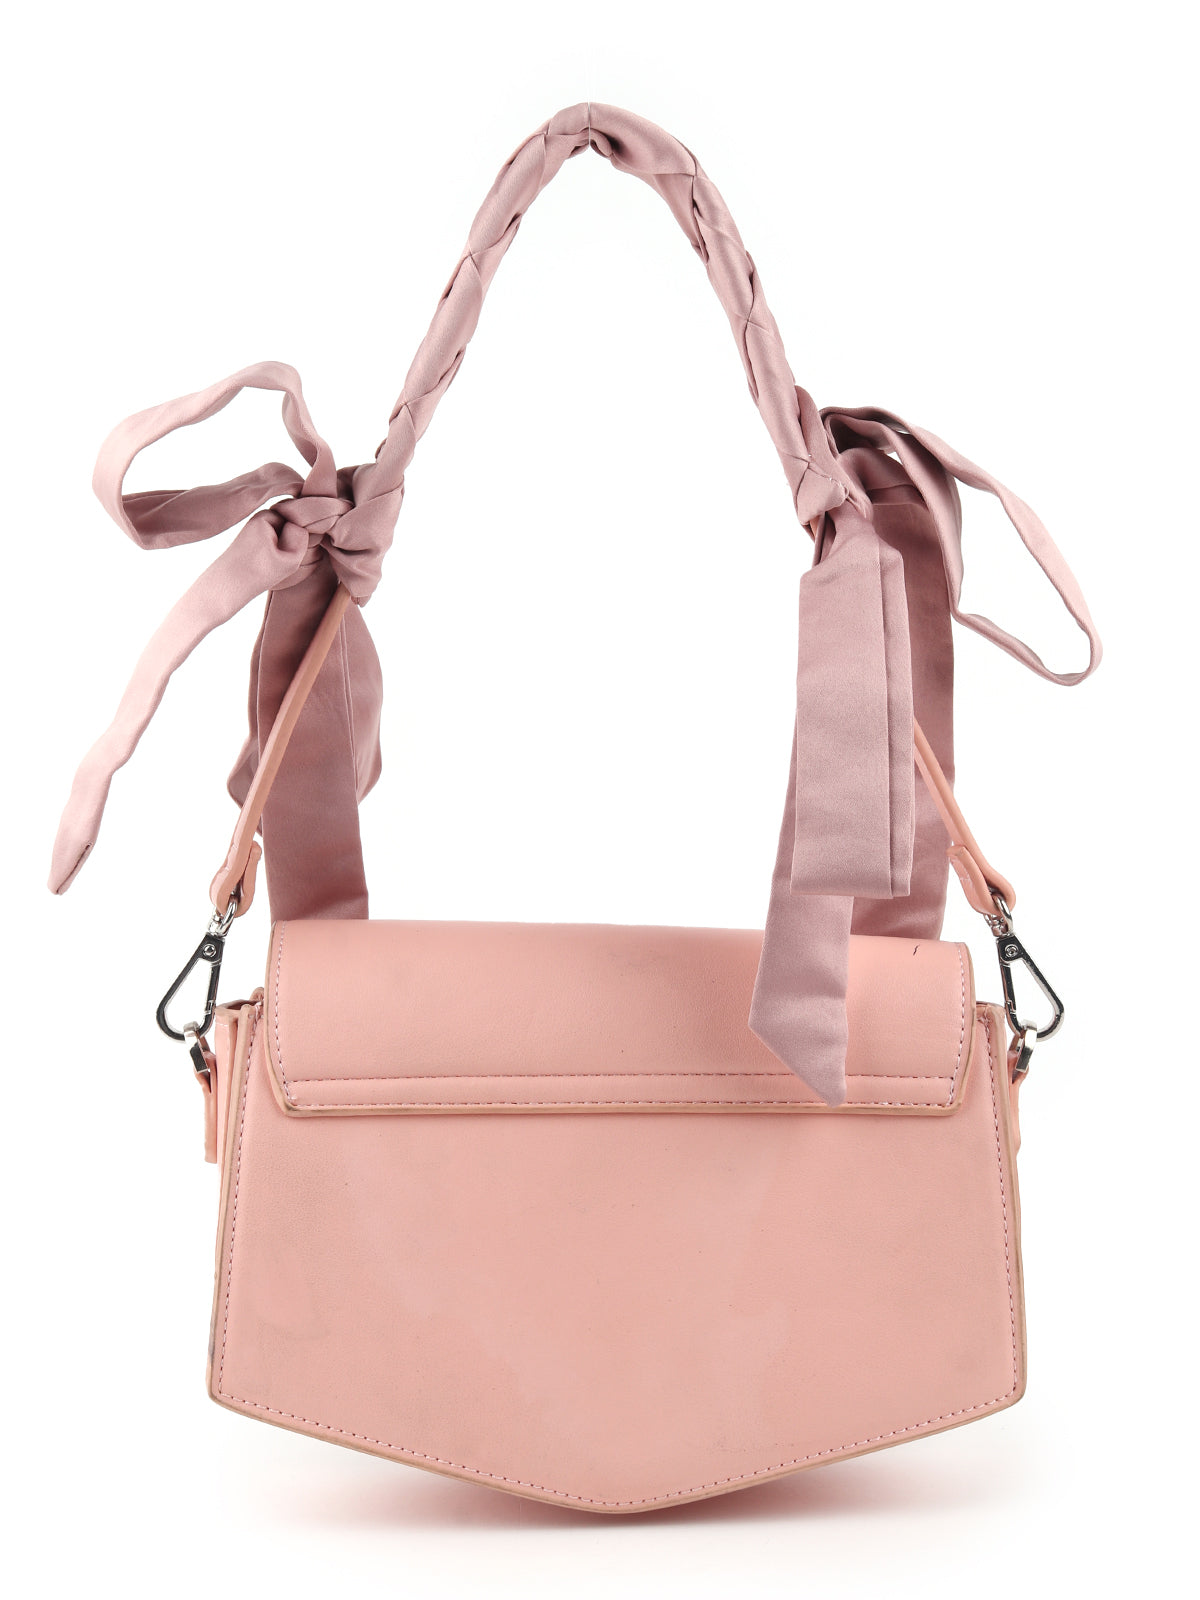 Odette Women Light Pink Embellished Sling Bag With Stylish Handle